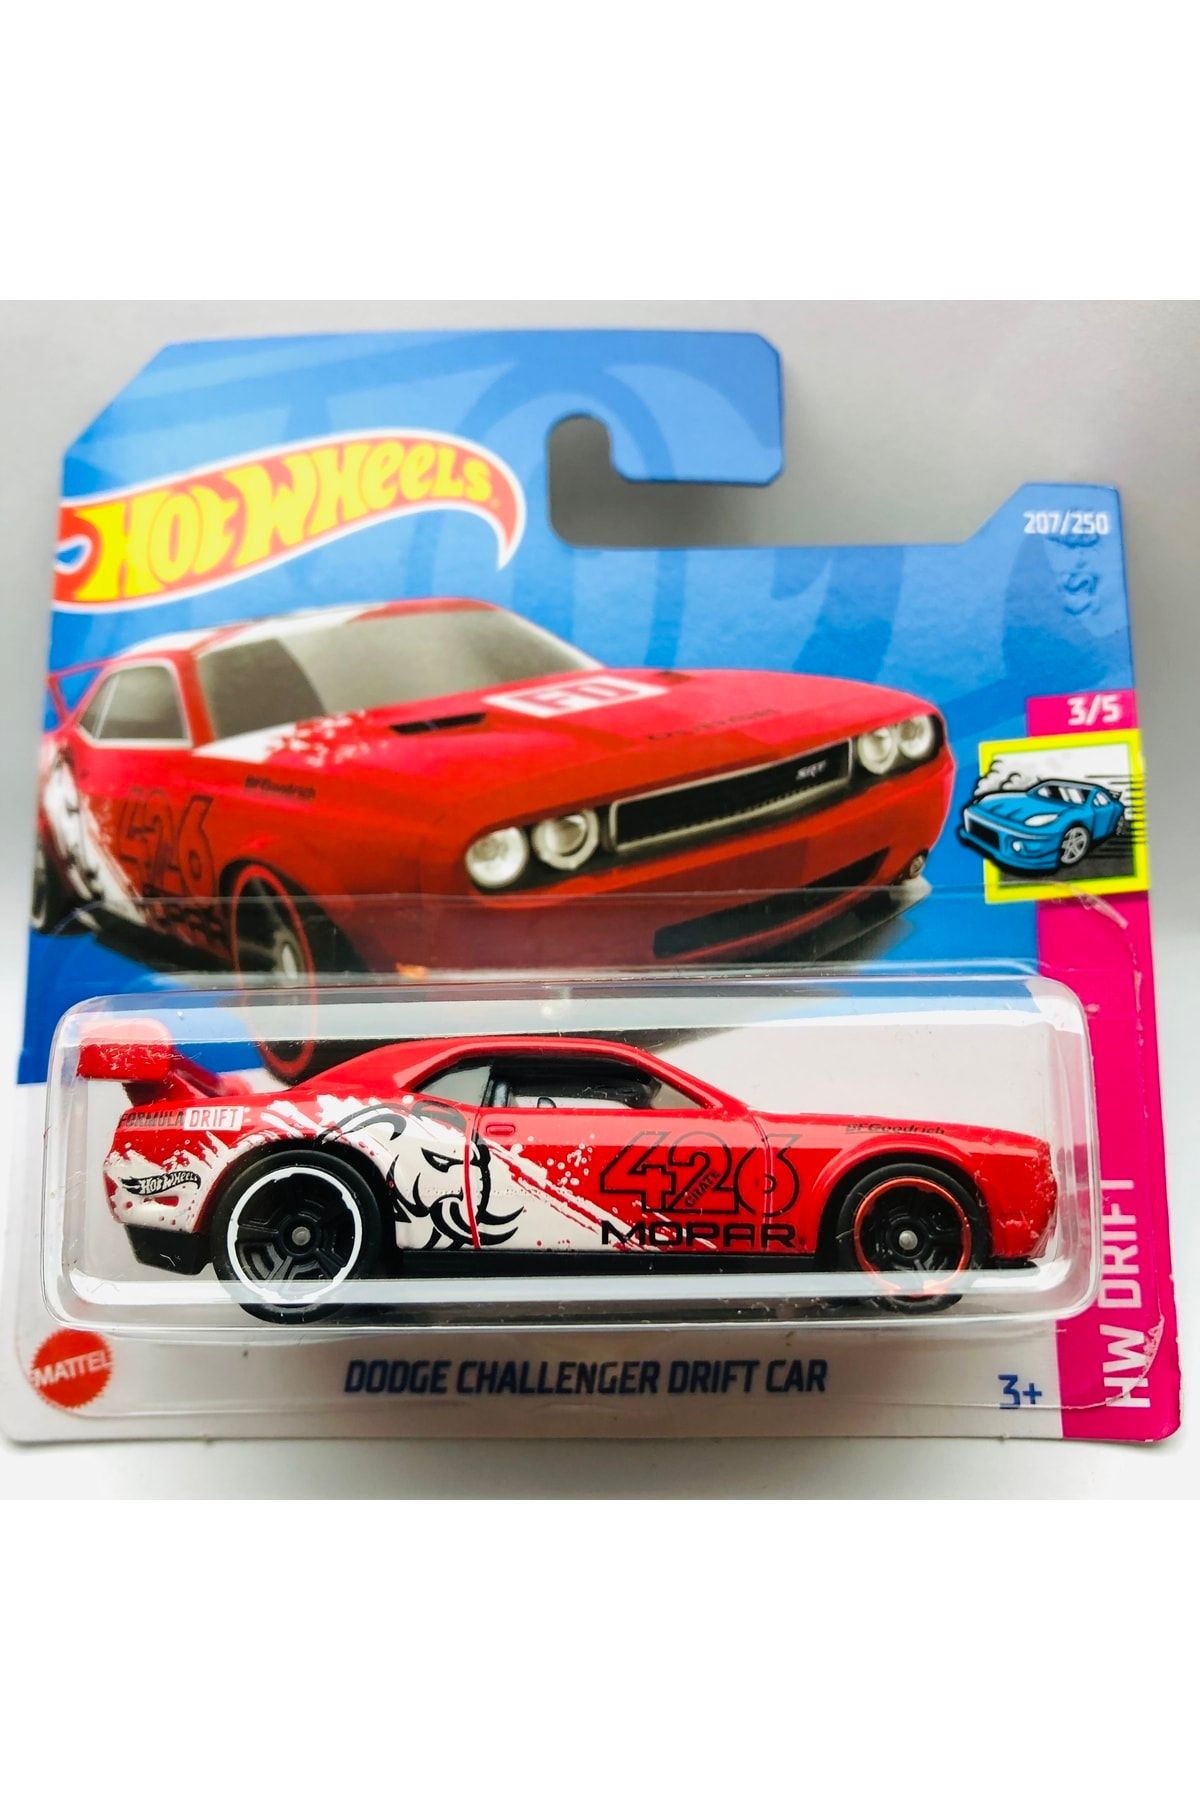 HOT WHEELS New - Yeni Dodge Challenger Drift Car Red 1:64 Ölçek Hotwheels Marka 3/5